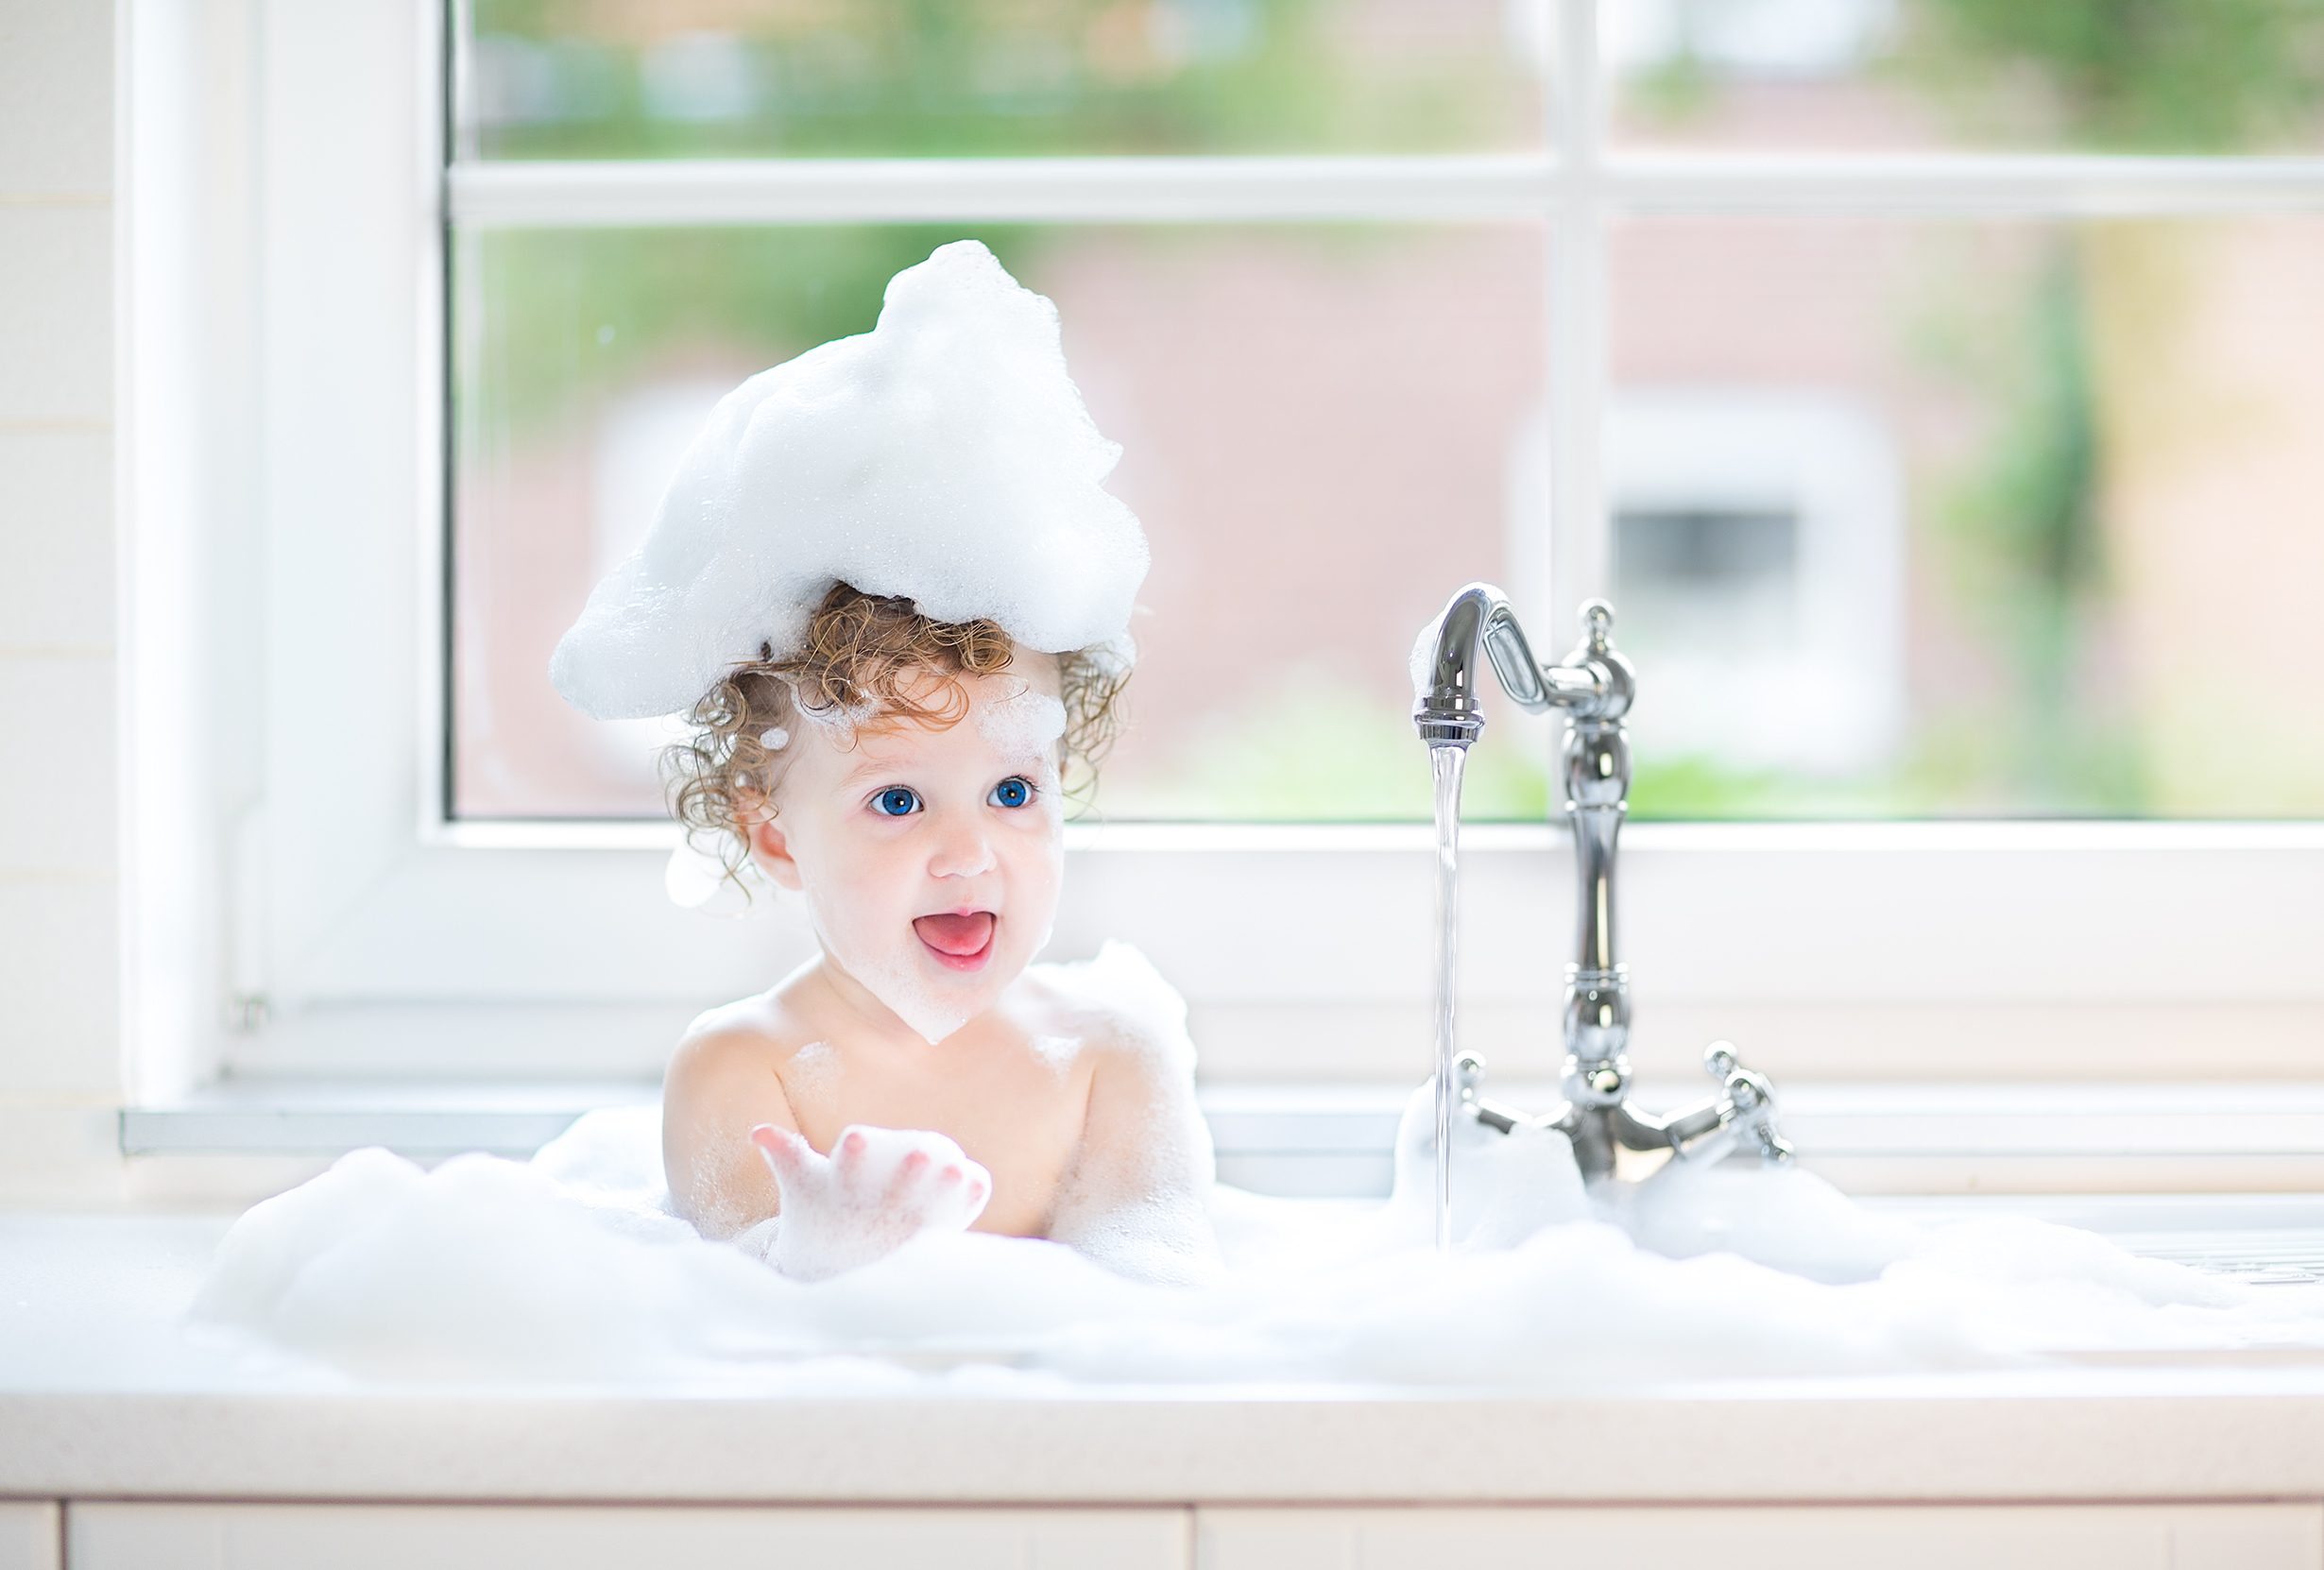 Em bé đáng yêu trong bồn tắm. (Ảnh: Shutterstock)